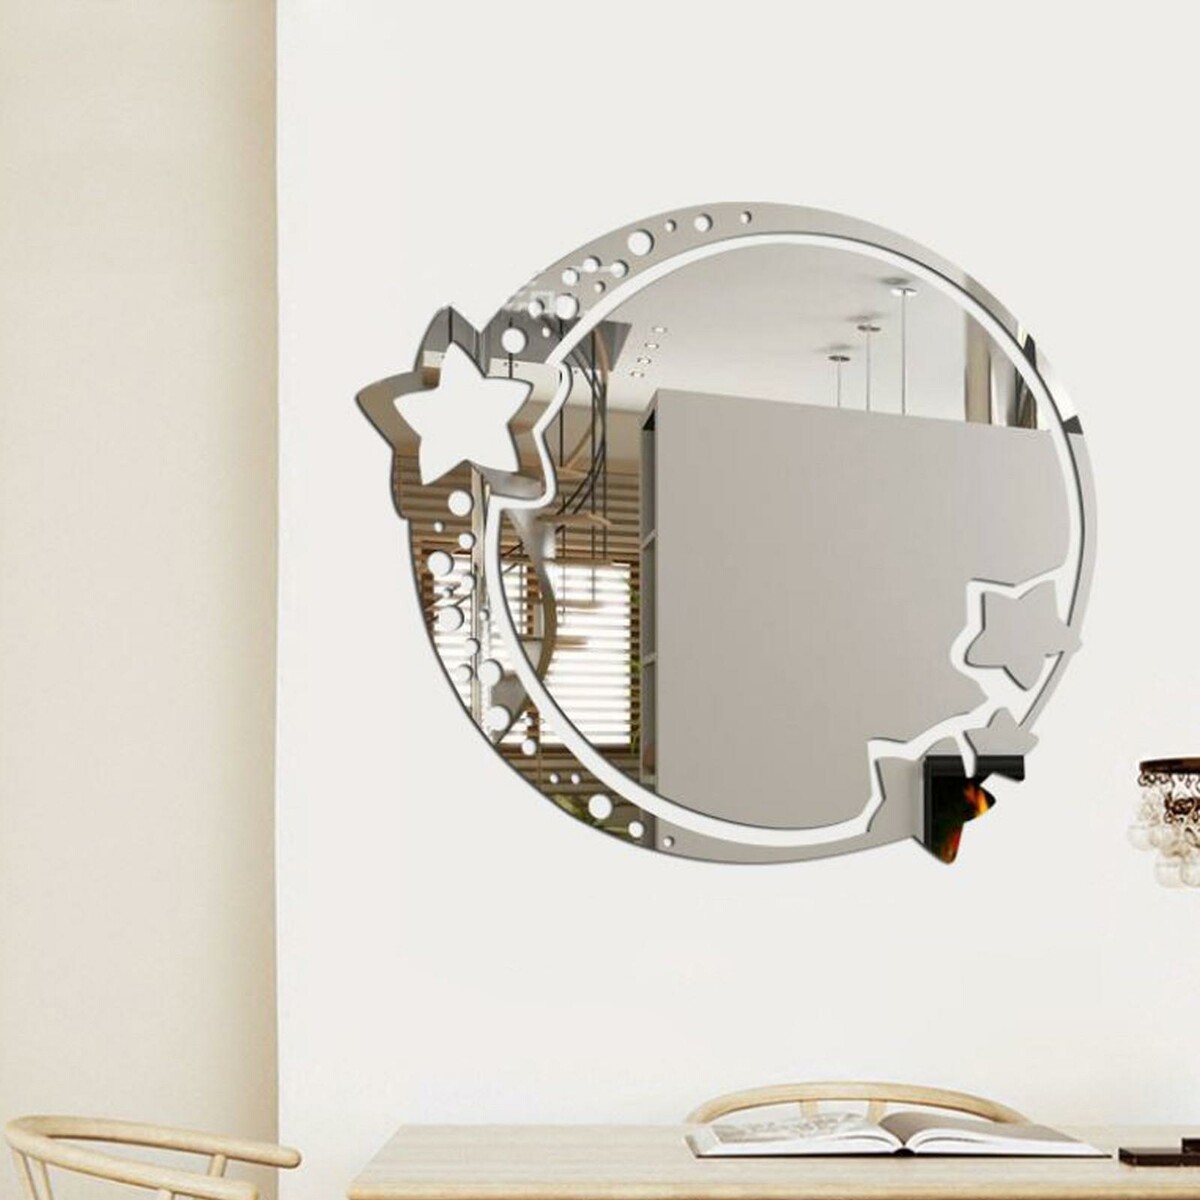 Зеркало настенное, наклейки интерьерные, зеркальные, декор на стену, панно 22 х 19 см